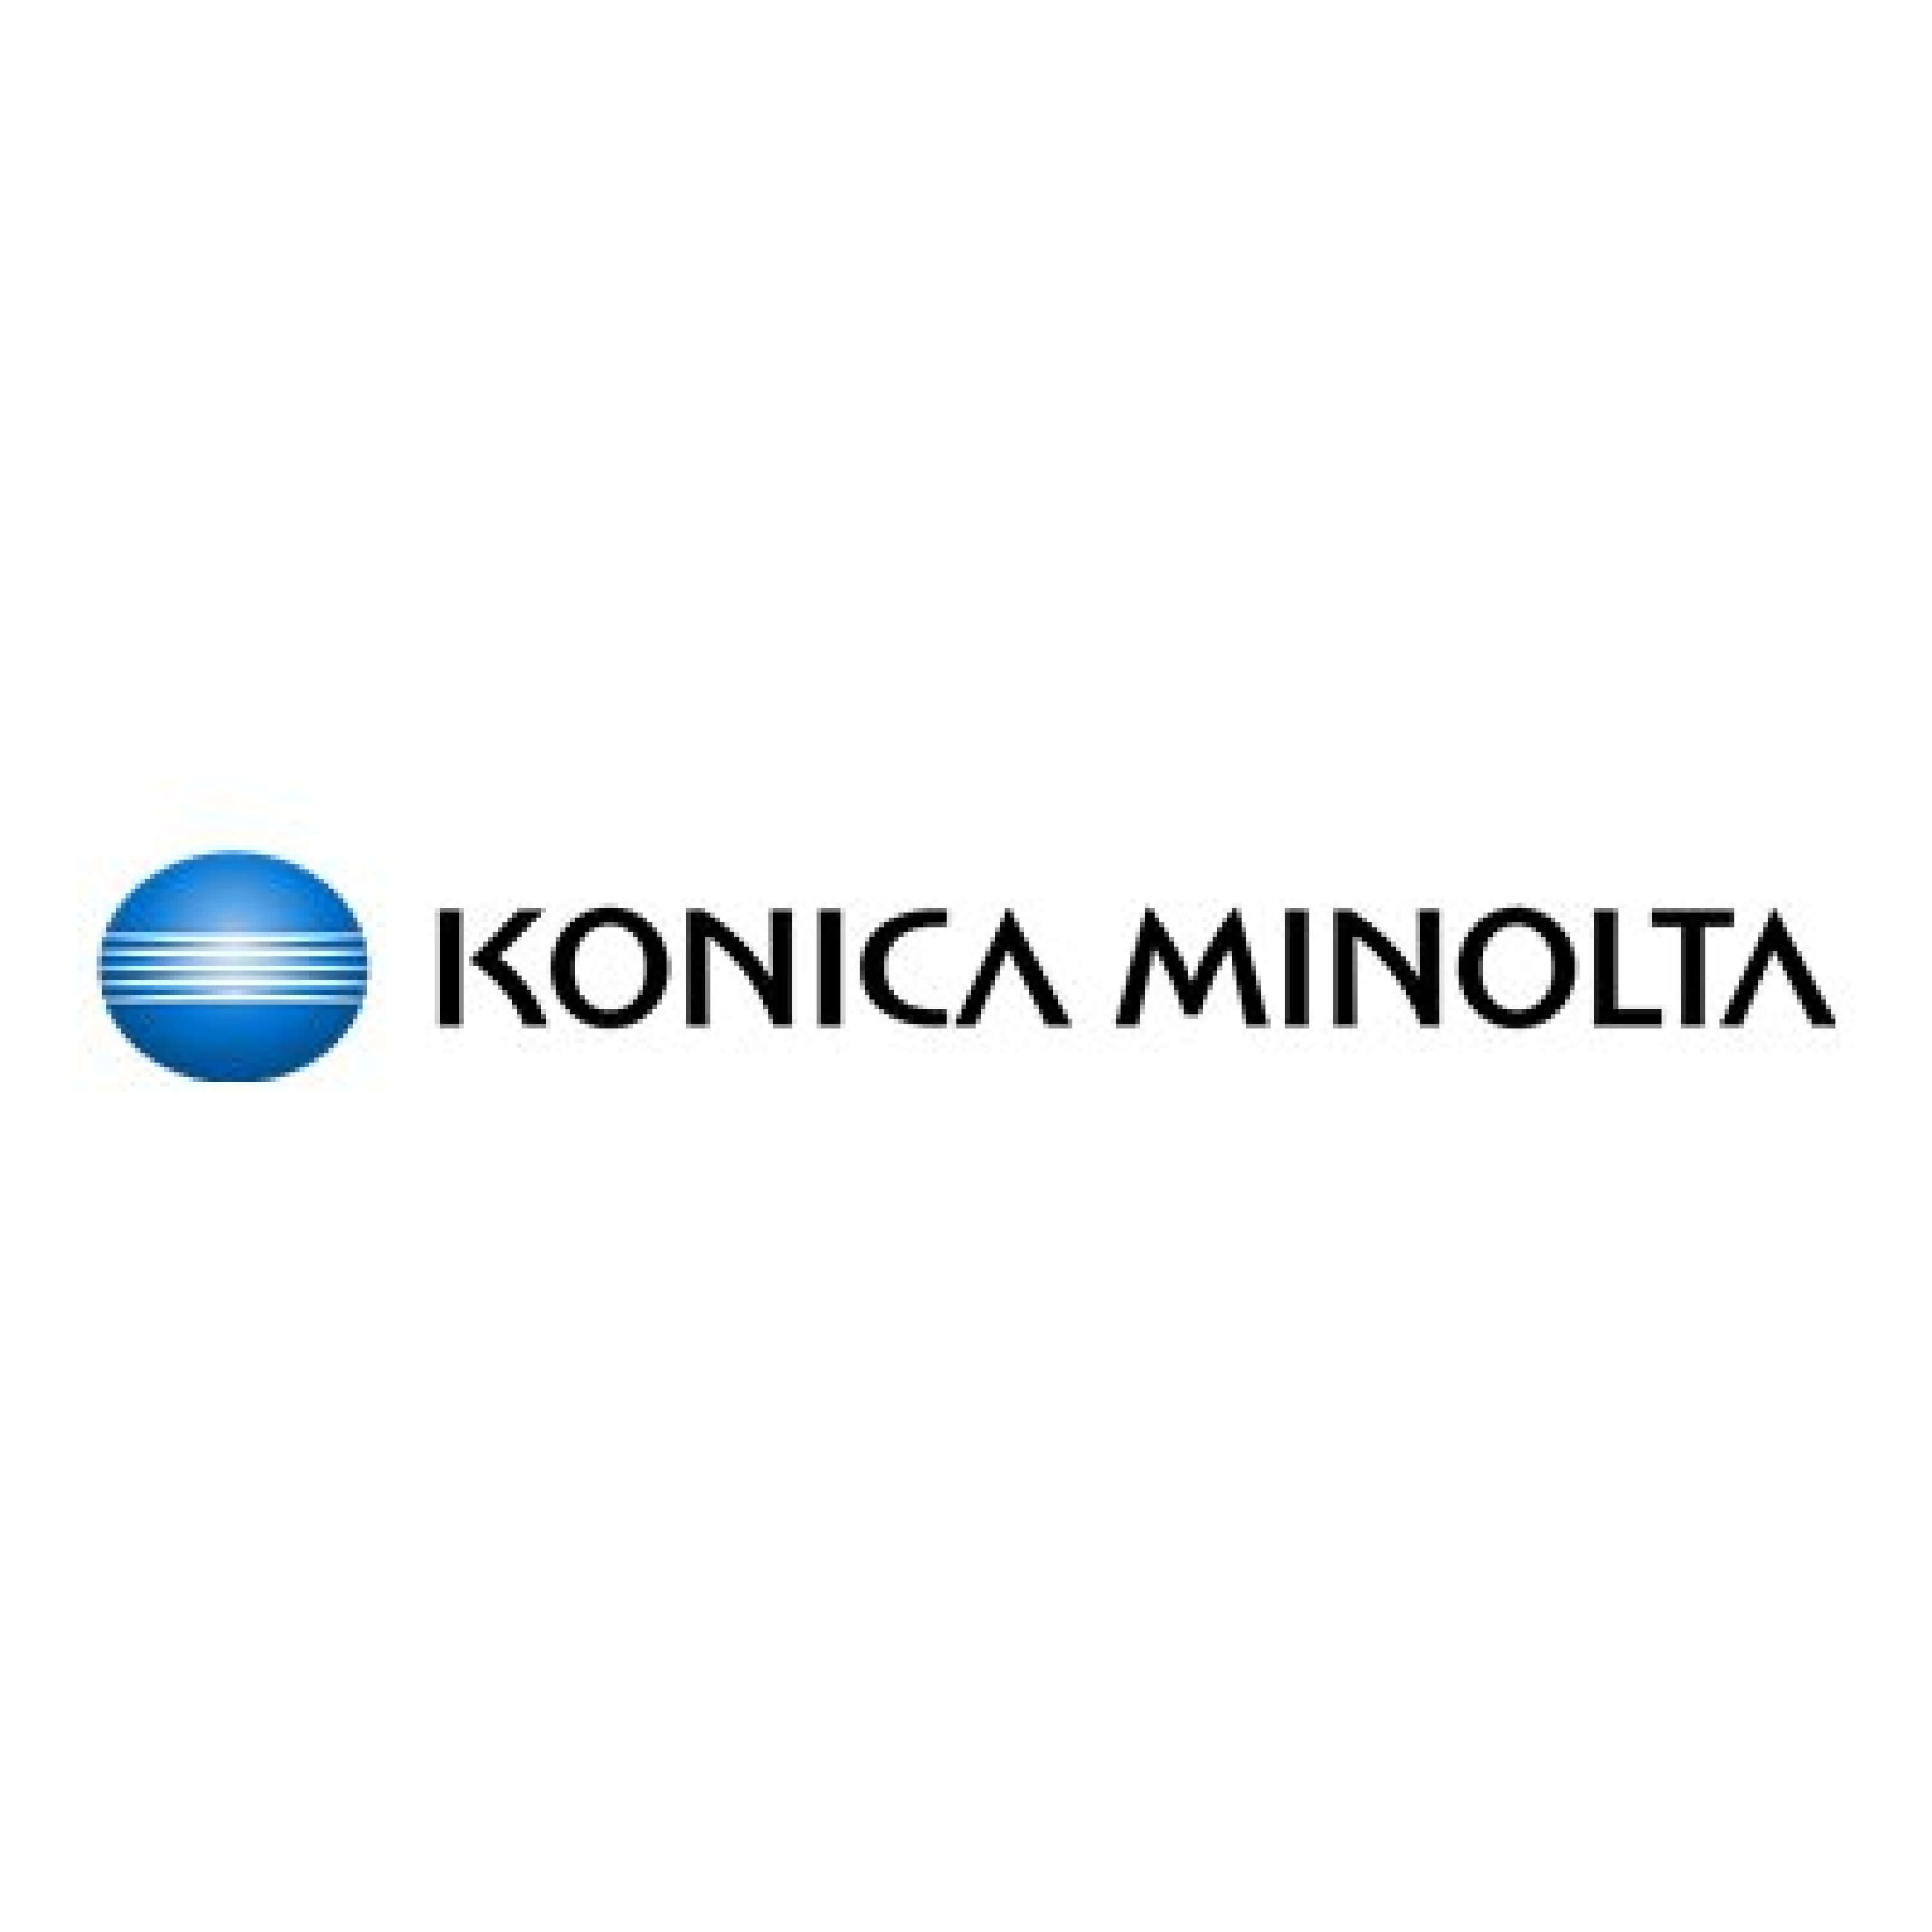 Original Toner Konica Minolta Bizhub Press C 3080 dx (A3VX450 / TN-619C) Cyan